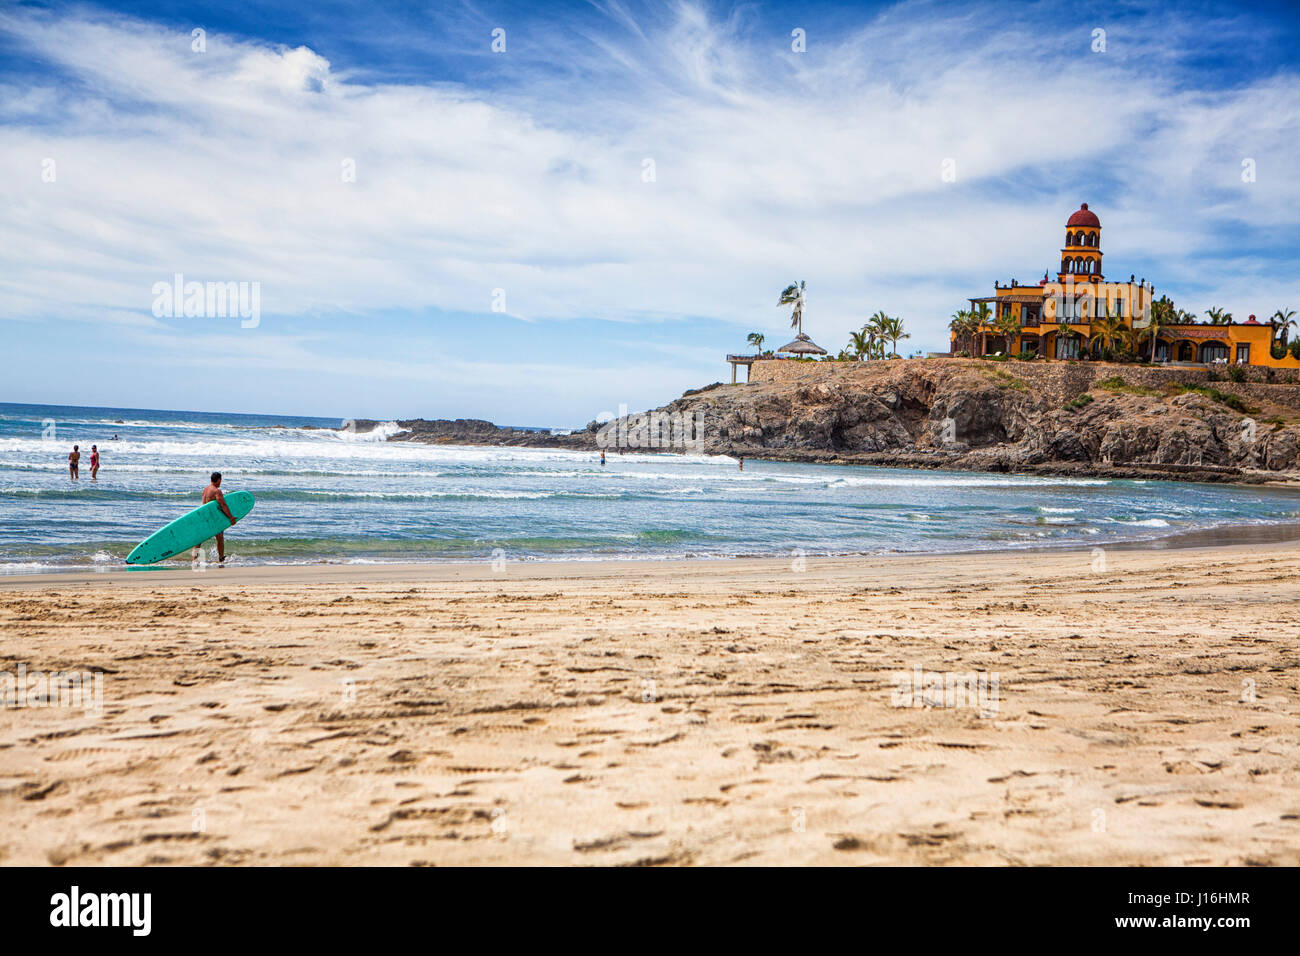 Les touristes et les habitants de nager et surfer sur l'océan Pacifique à Los Cerritos, Todos Santos, Baja Sur, Mexique Banque D'Images